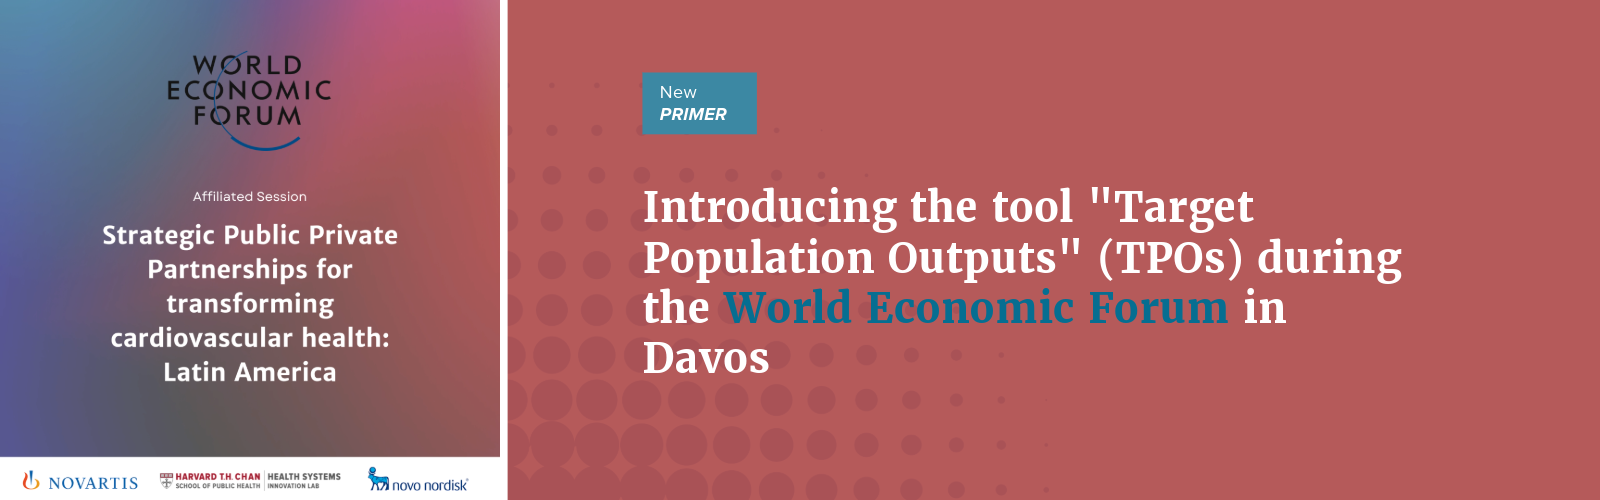 Primer on Target Population Outputs (TPOs)